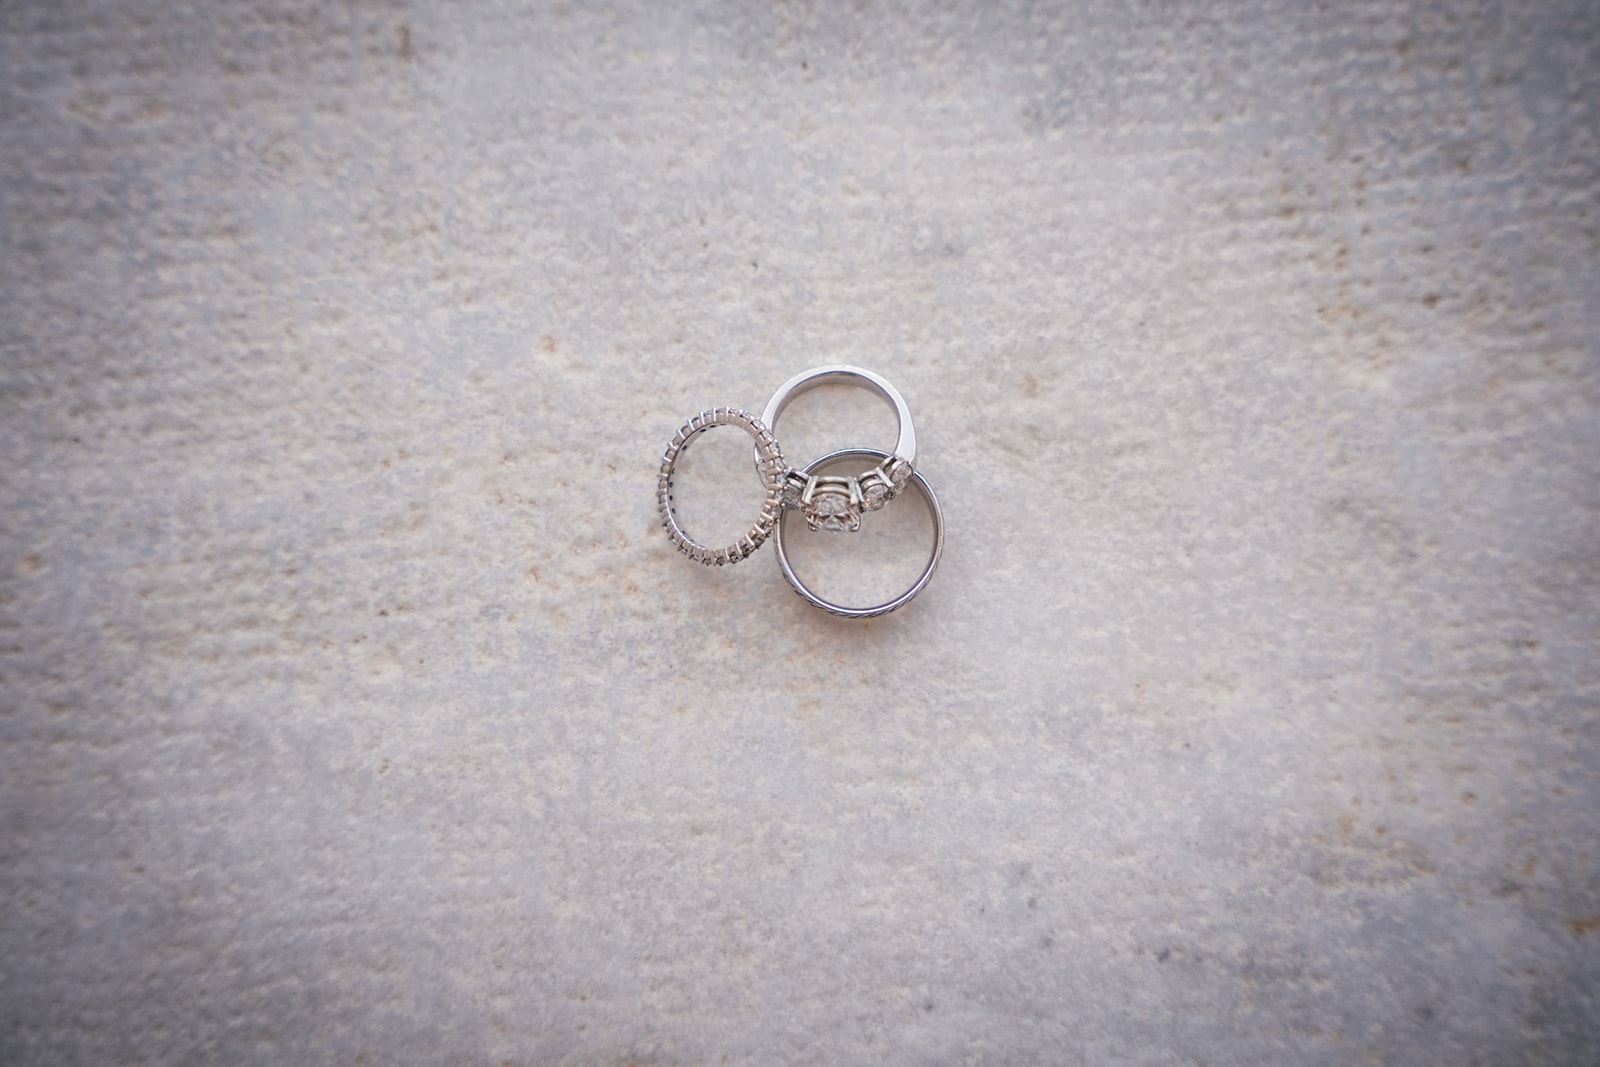 Symbolic wedding rings await their moment, promising eternal love on Santorini